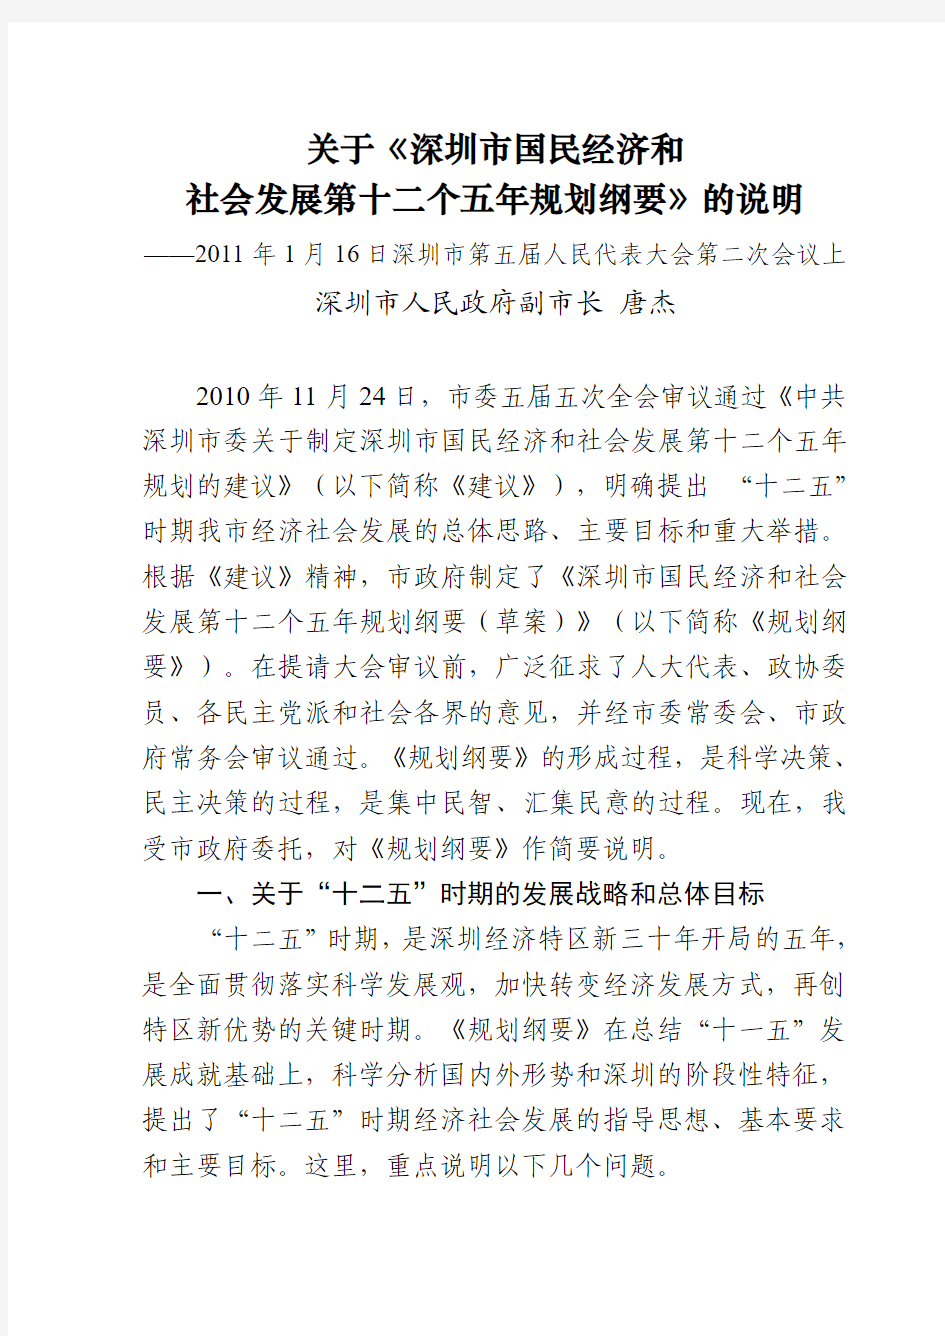 关于《深圳市国民经济和社会发展第十二个五年规划纲要》的说明